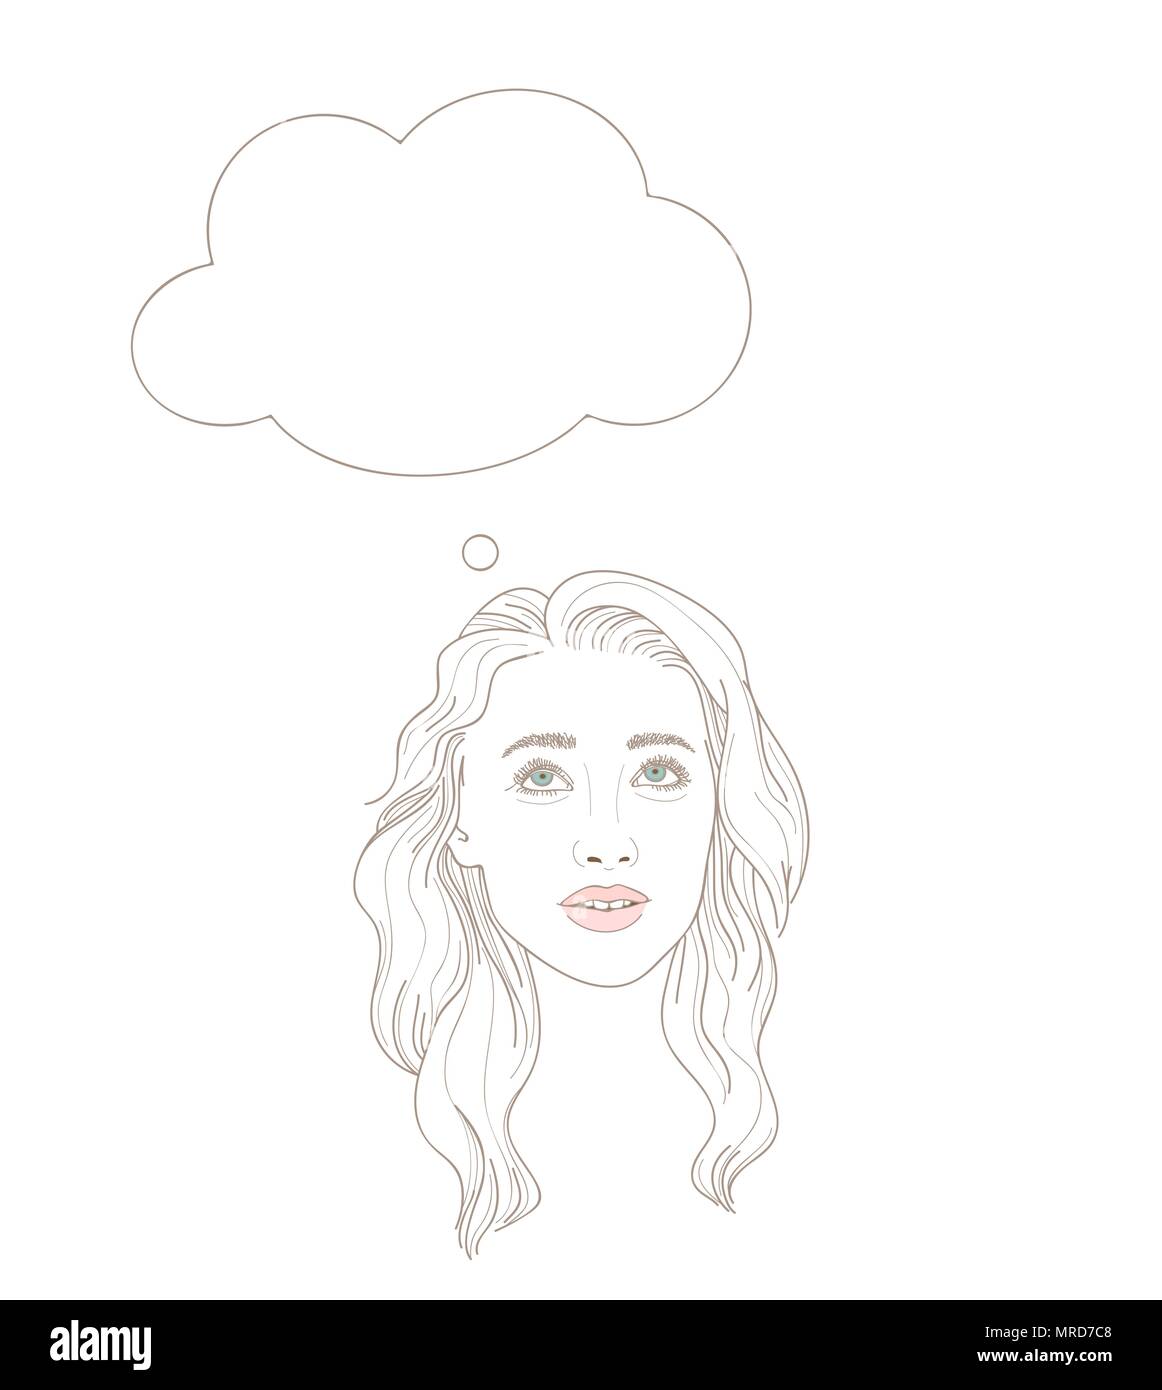 Illustrazione della giovane donna cercando dreamily con bolla di pensiero sopra la sua testa Illustrazione Vettoriale